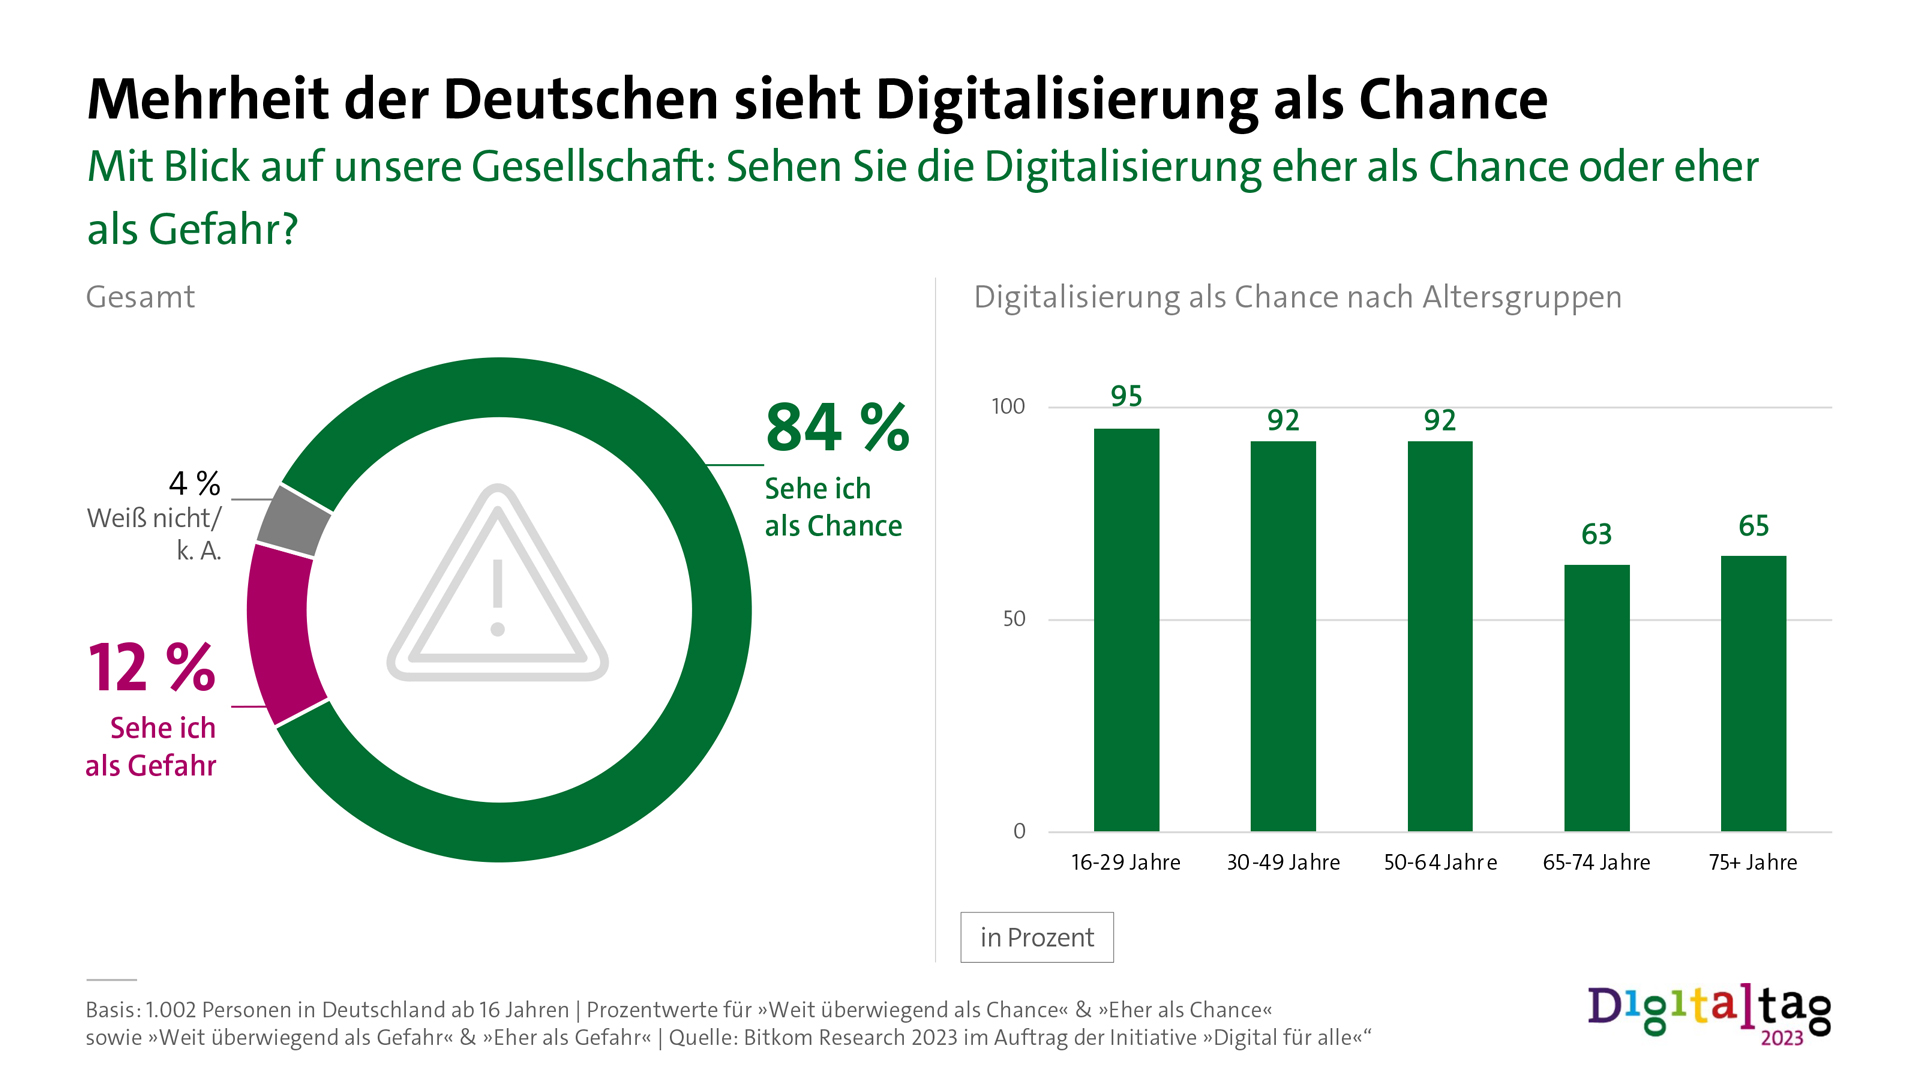 Infografik: Mehrheit der Deutschen sieht Digitalisierung als Chance. Mit Blick auf unsere Gesellschaft: Sehen Sie die Digitalisierung eher als Chance oder eher als Gefahr? 84%: Sehe ich als Chance. 12%: Sehe ich als Gefahr. 4%: Weiß nicht/k. A. 